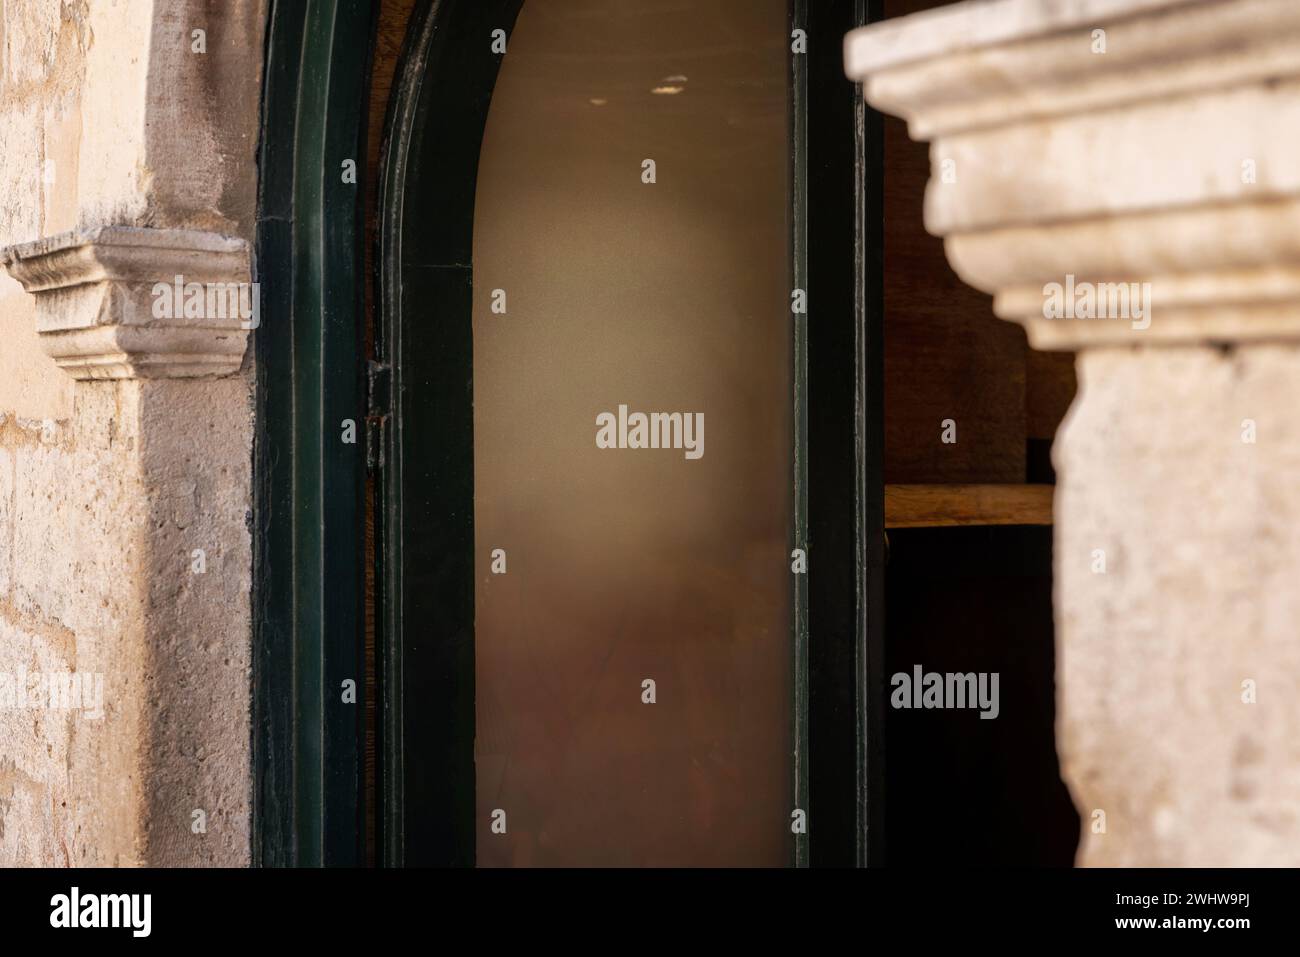 Entrata del negozio o del ristorante, una finestra pulita funge da tela per la promozione del logo. Il vecchio telaio della porta e le pareti in pietra donano un fascino rustico Foto Stock